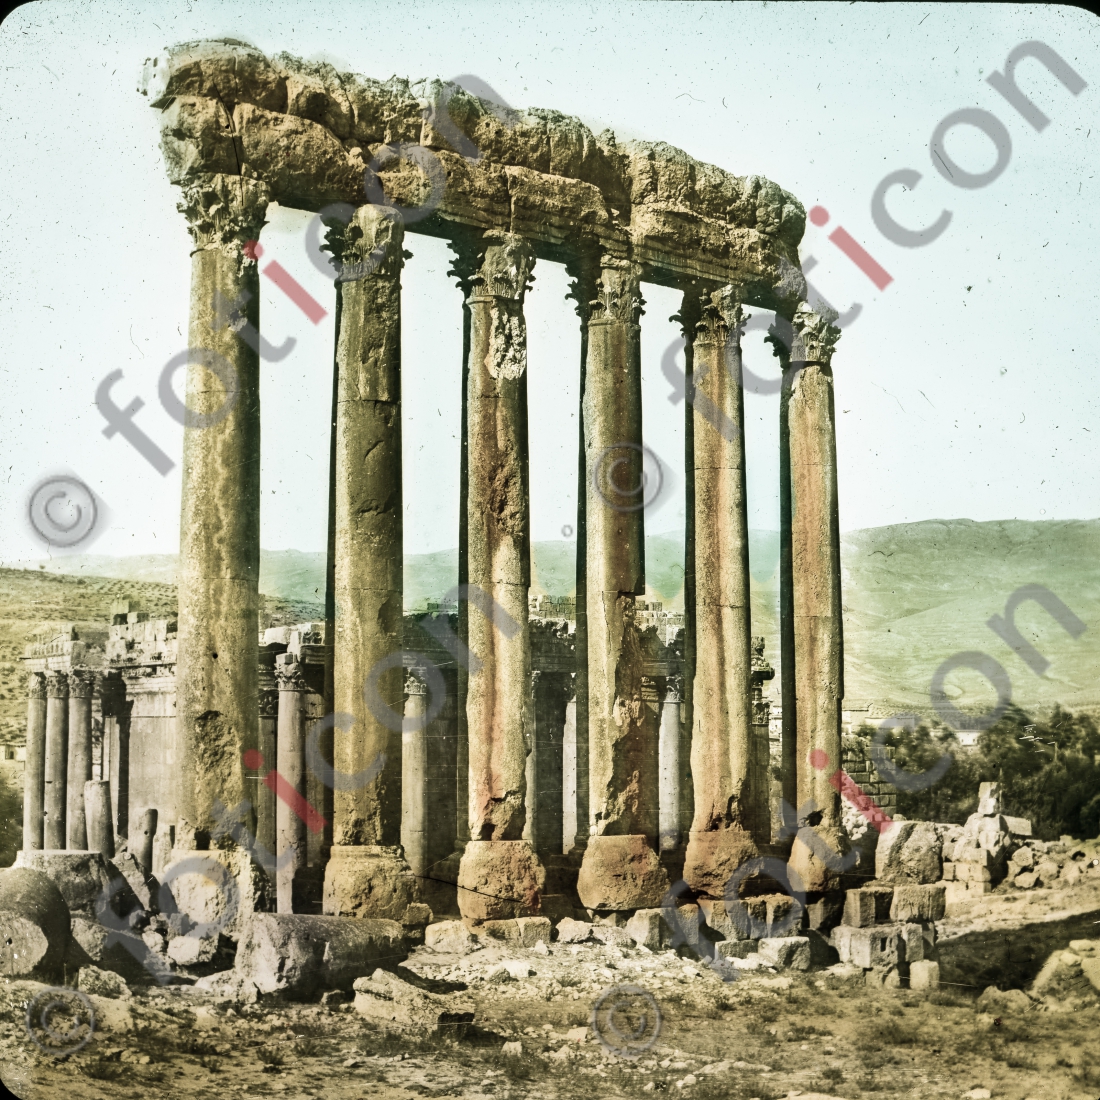 Die sechs Säulen des Jupitertempels | The six pillars of the Temple of Jupiter (foticon-simon-054-080.jpg)